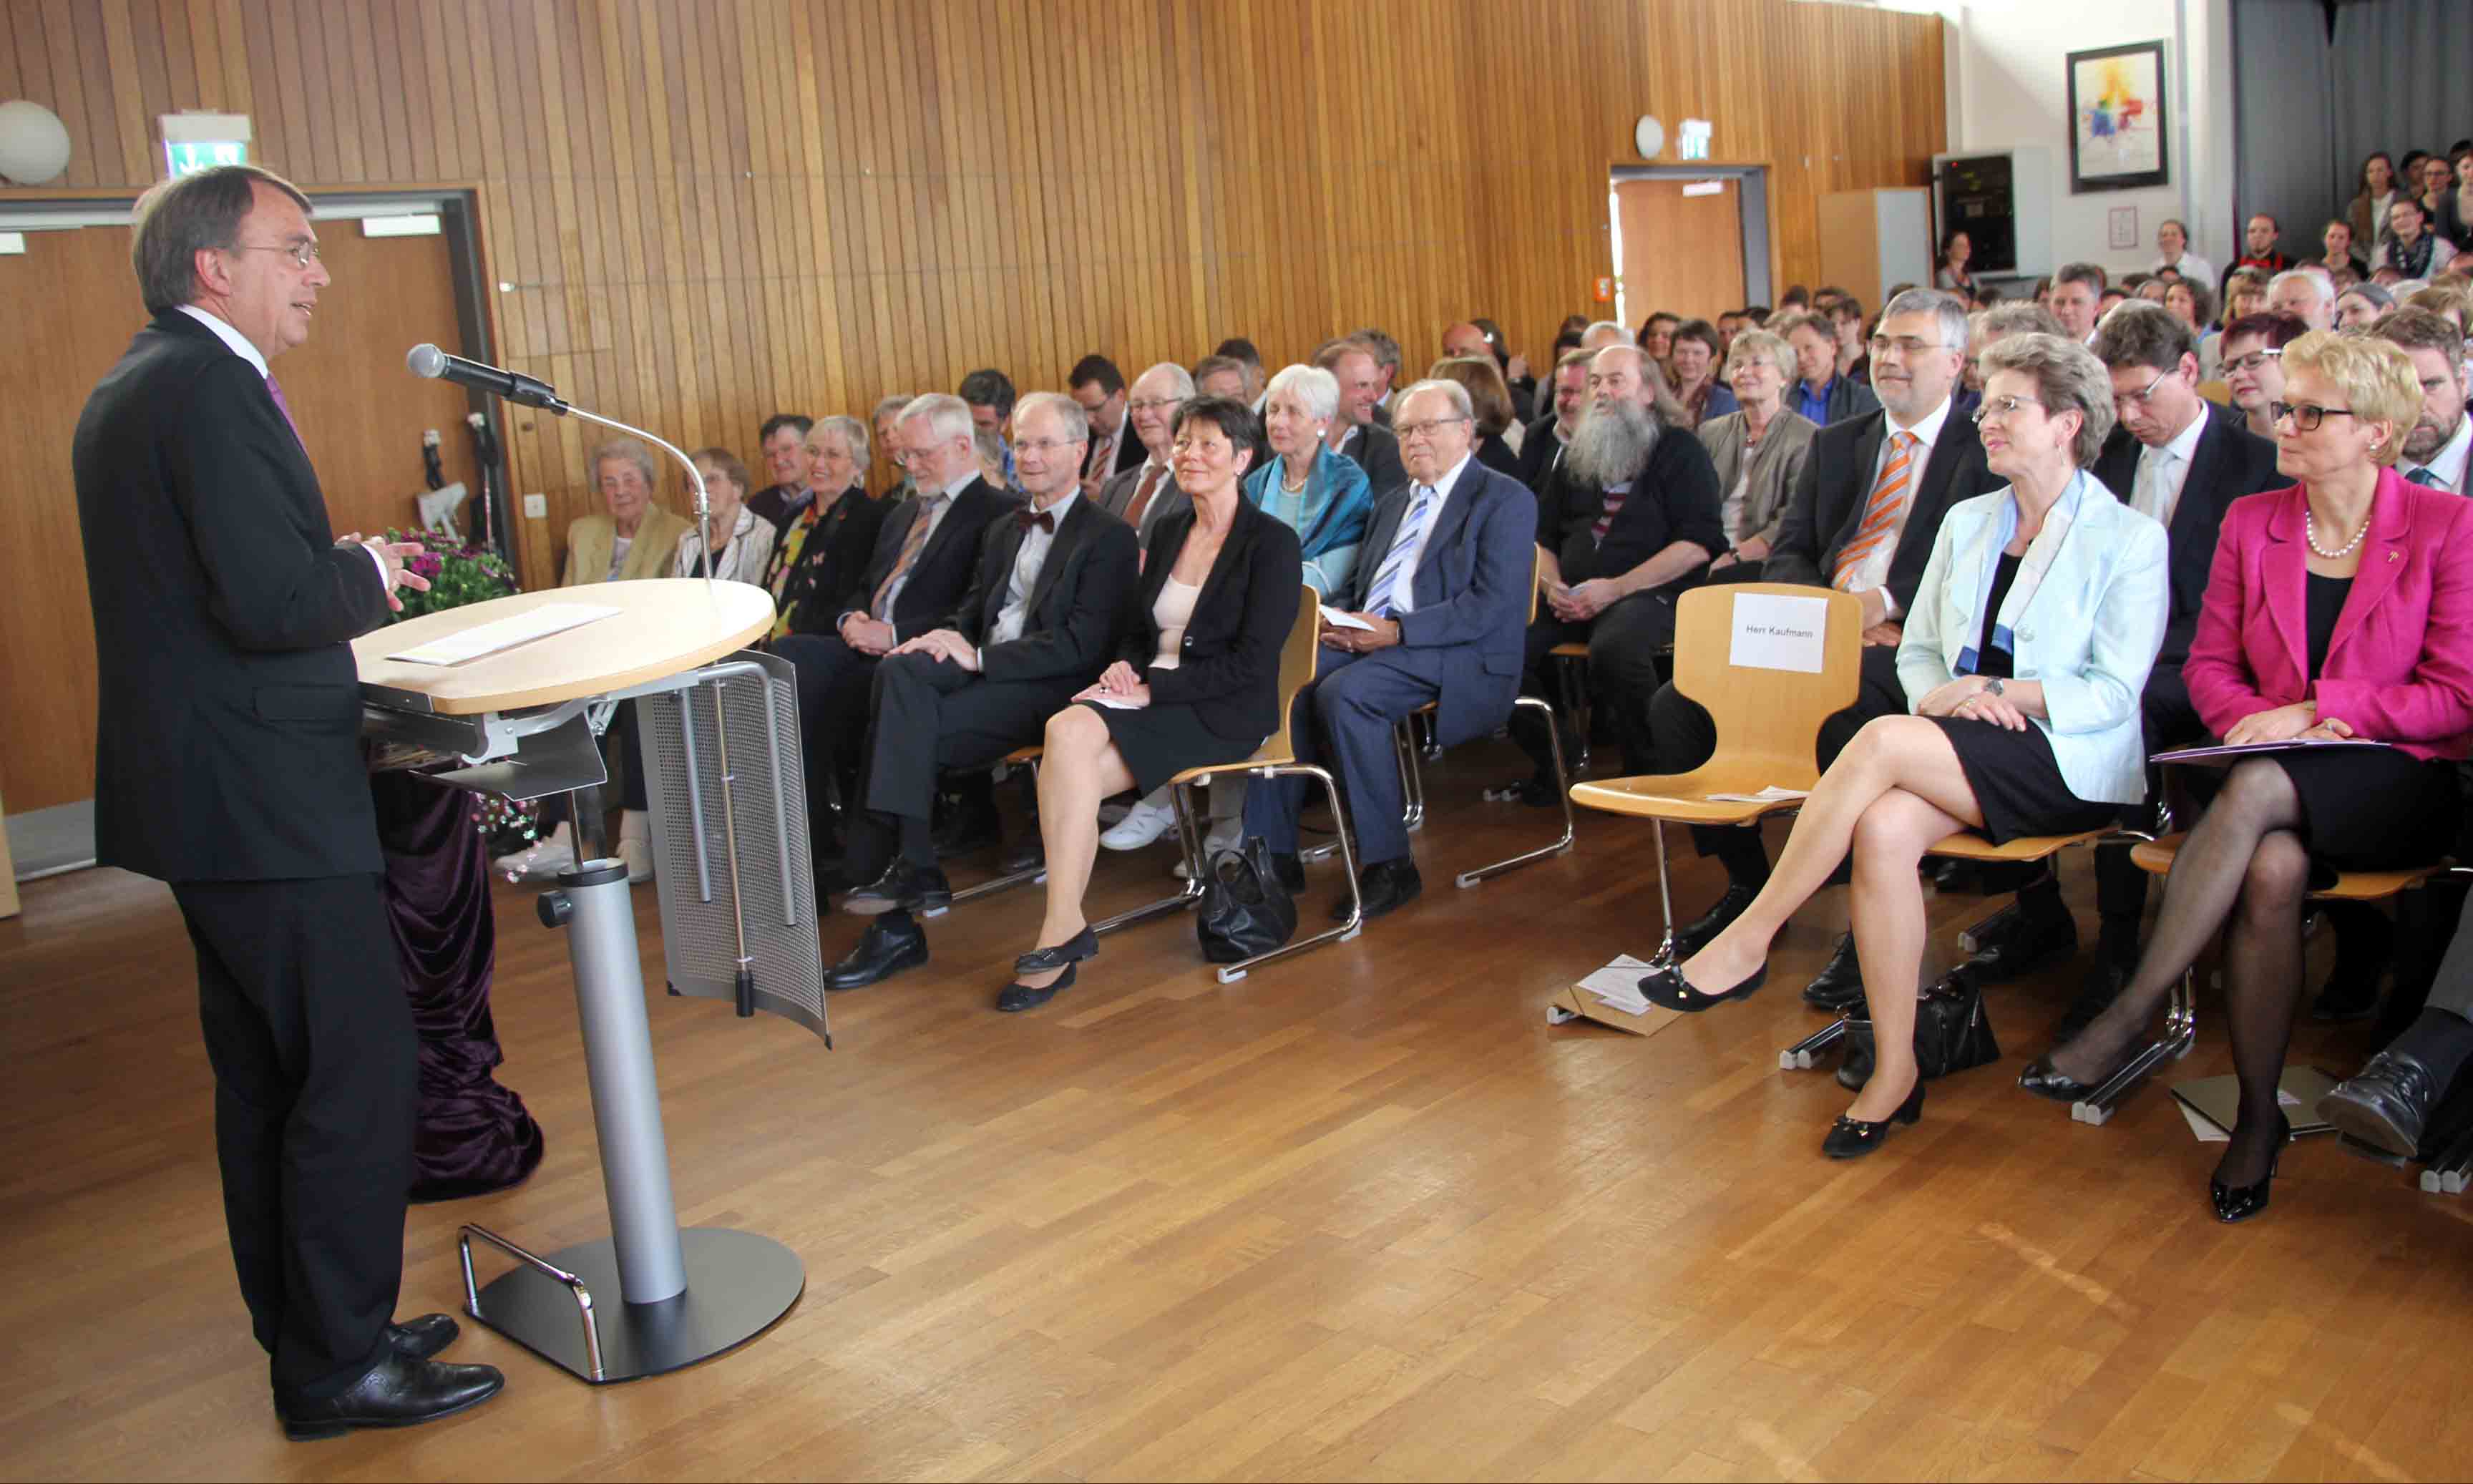 Oberkirchenrat Dieter Kaufmann, Vorsitzender des Trägervereins, begrüßt herzlich die zahlreichen Gäste beim Festakt zum 50-jährigen Jubiläum der Evangelischen Fachschule für Sozialpädagogik Reutlingen.